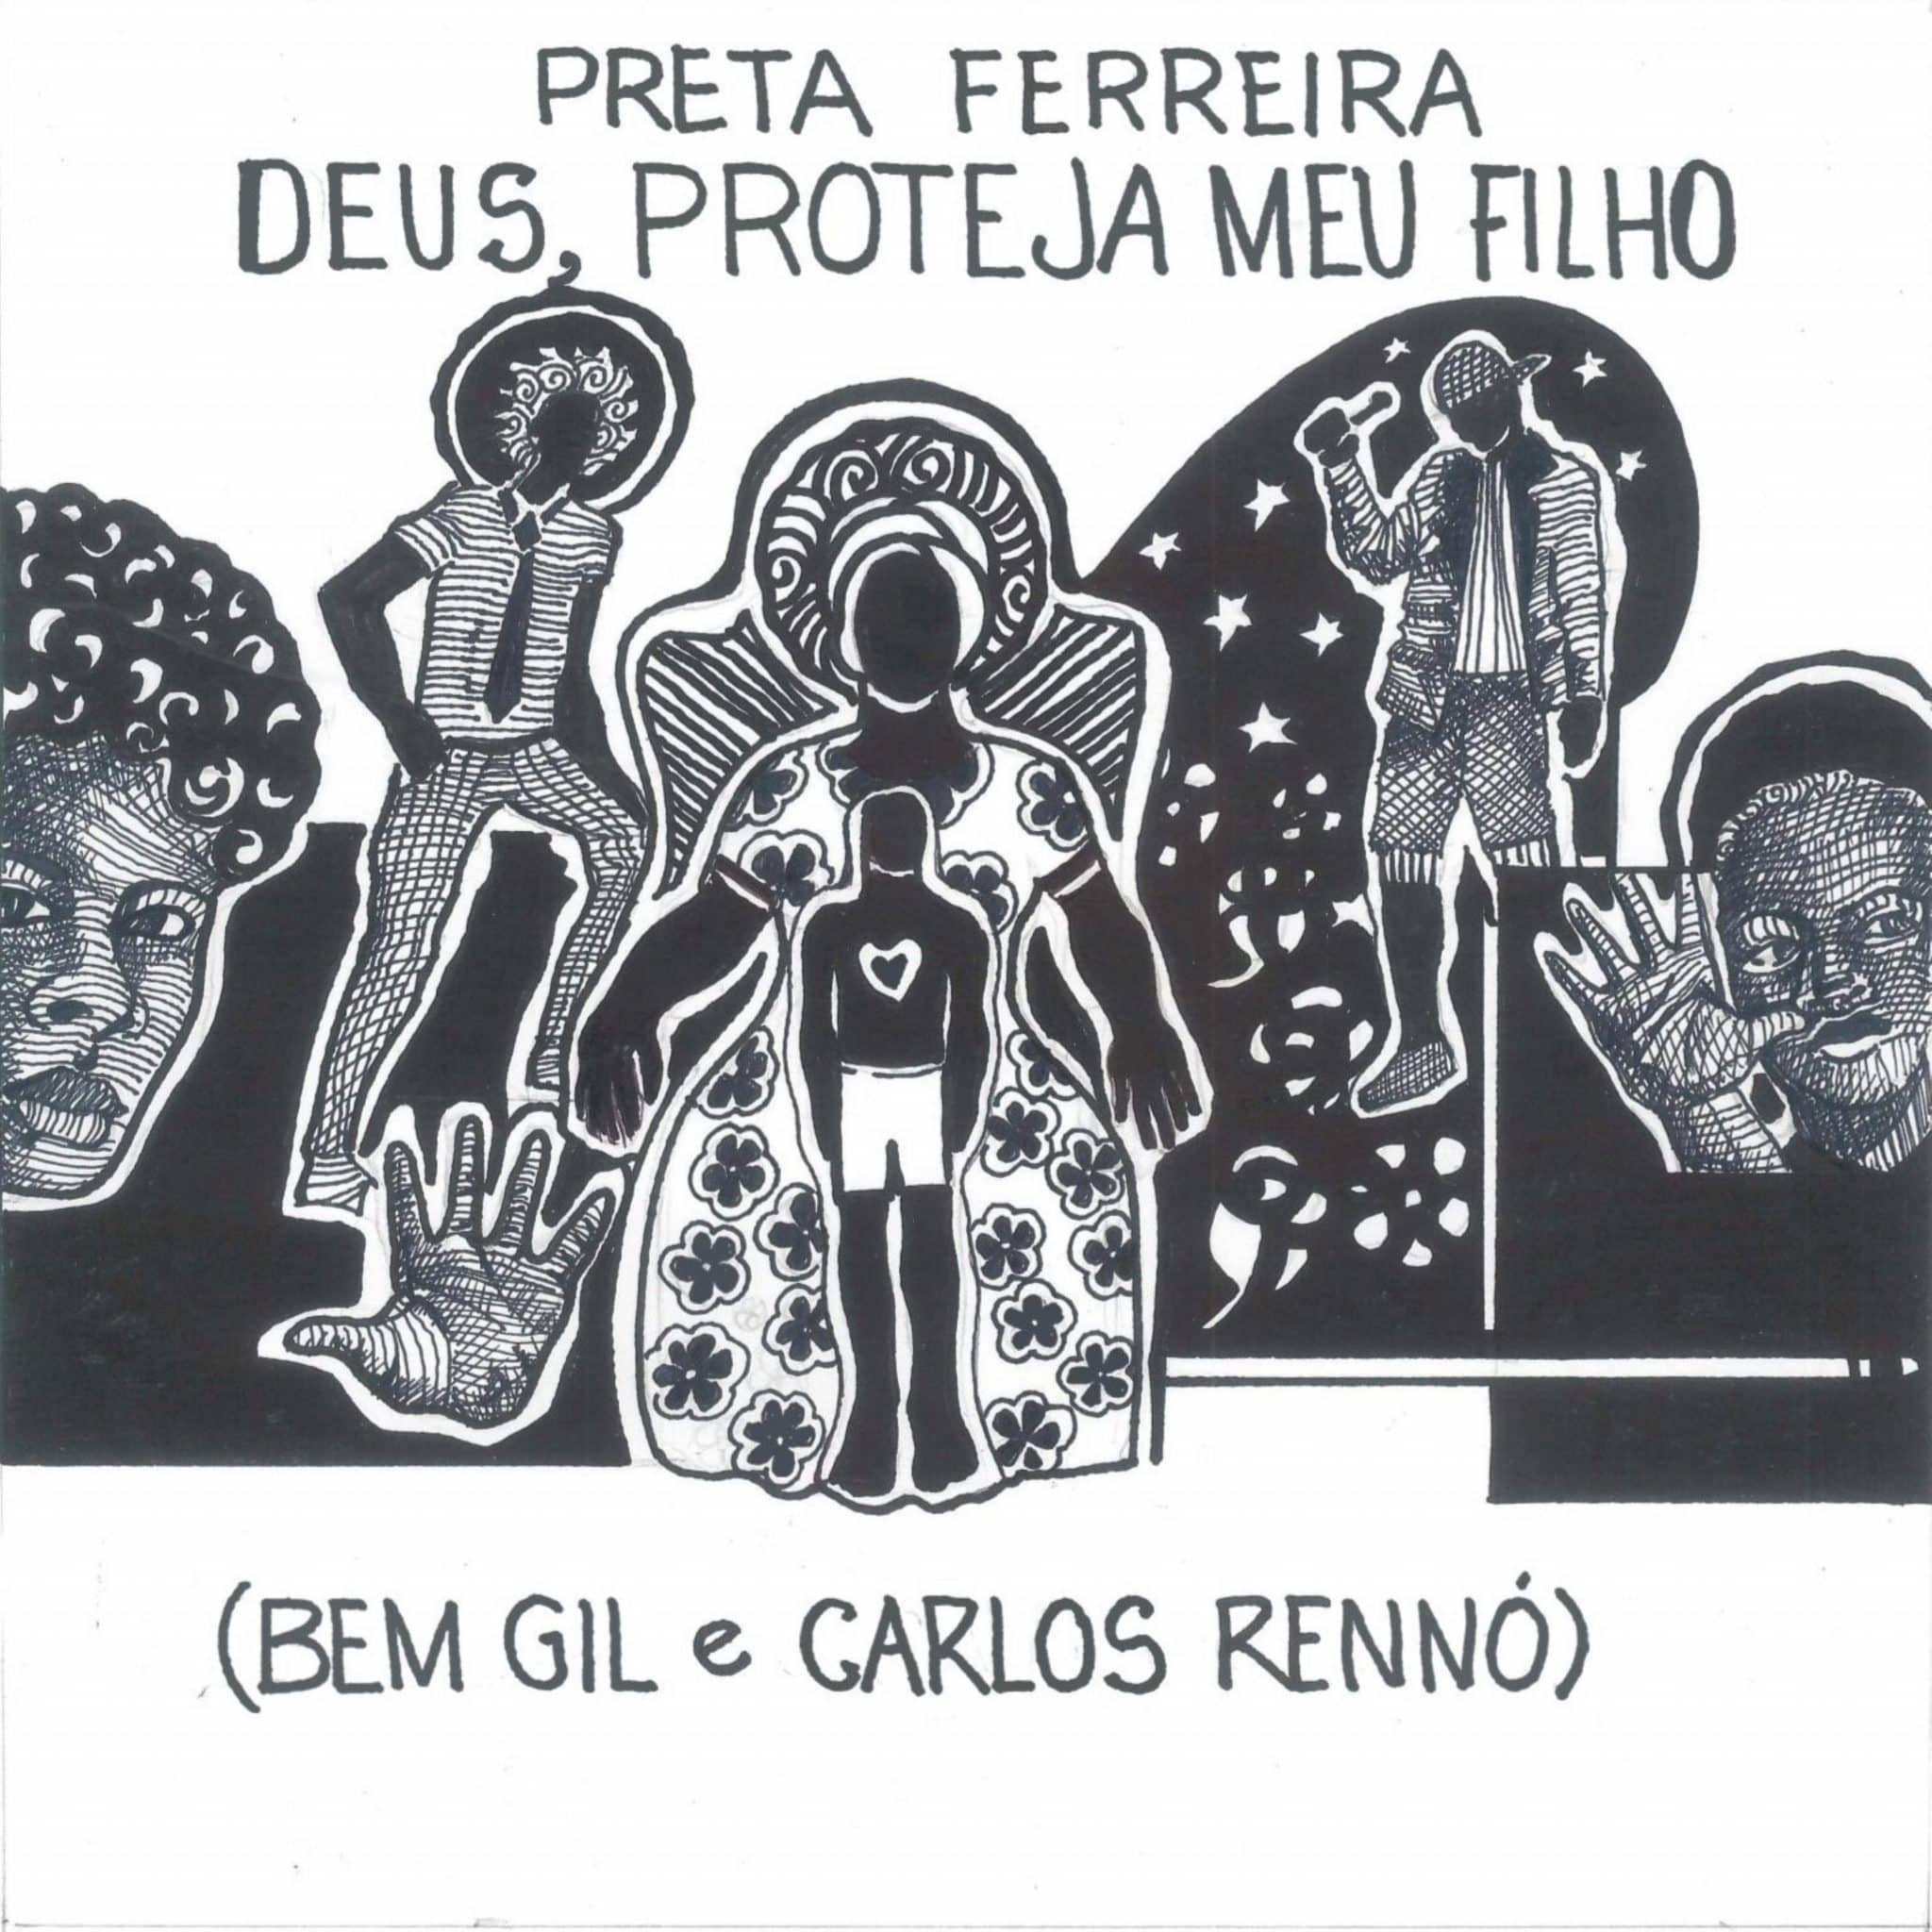 revistaprosaversoearte.com - Preta Ferreira lança single de Bem Gil e Carlos Rennó